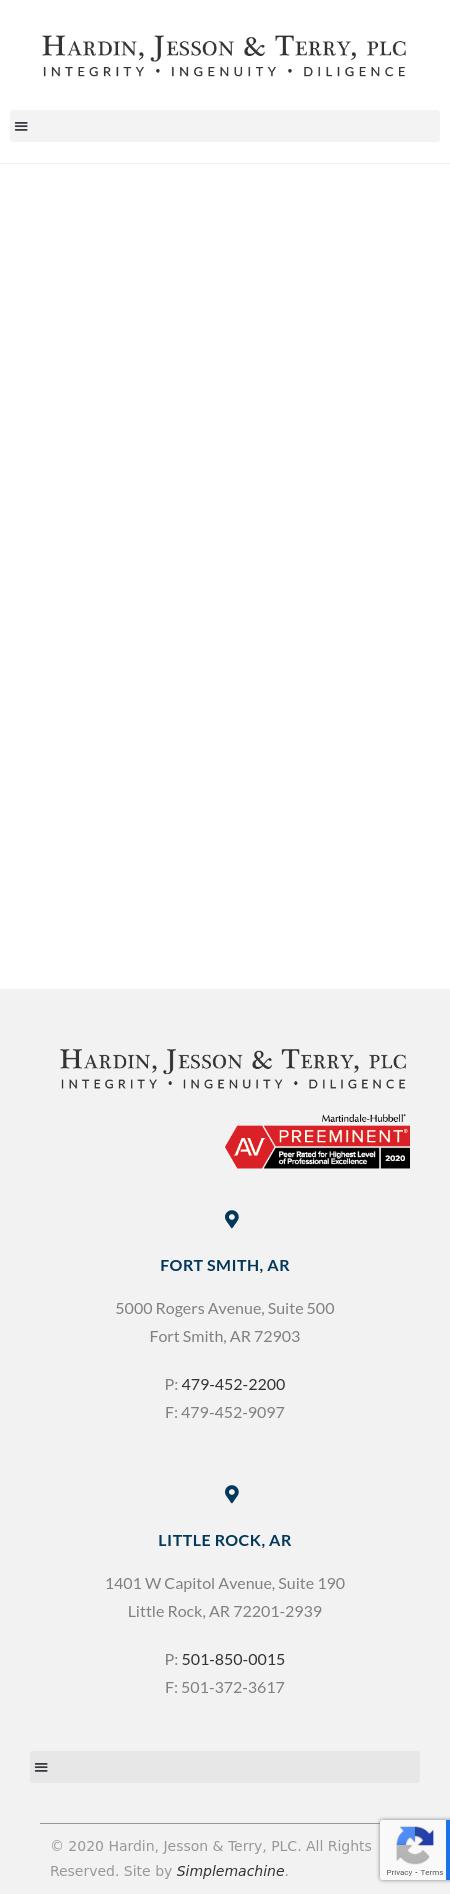 Hardin, Jesson & Terry, PLC - Little Rock AR Lawyers